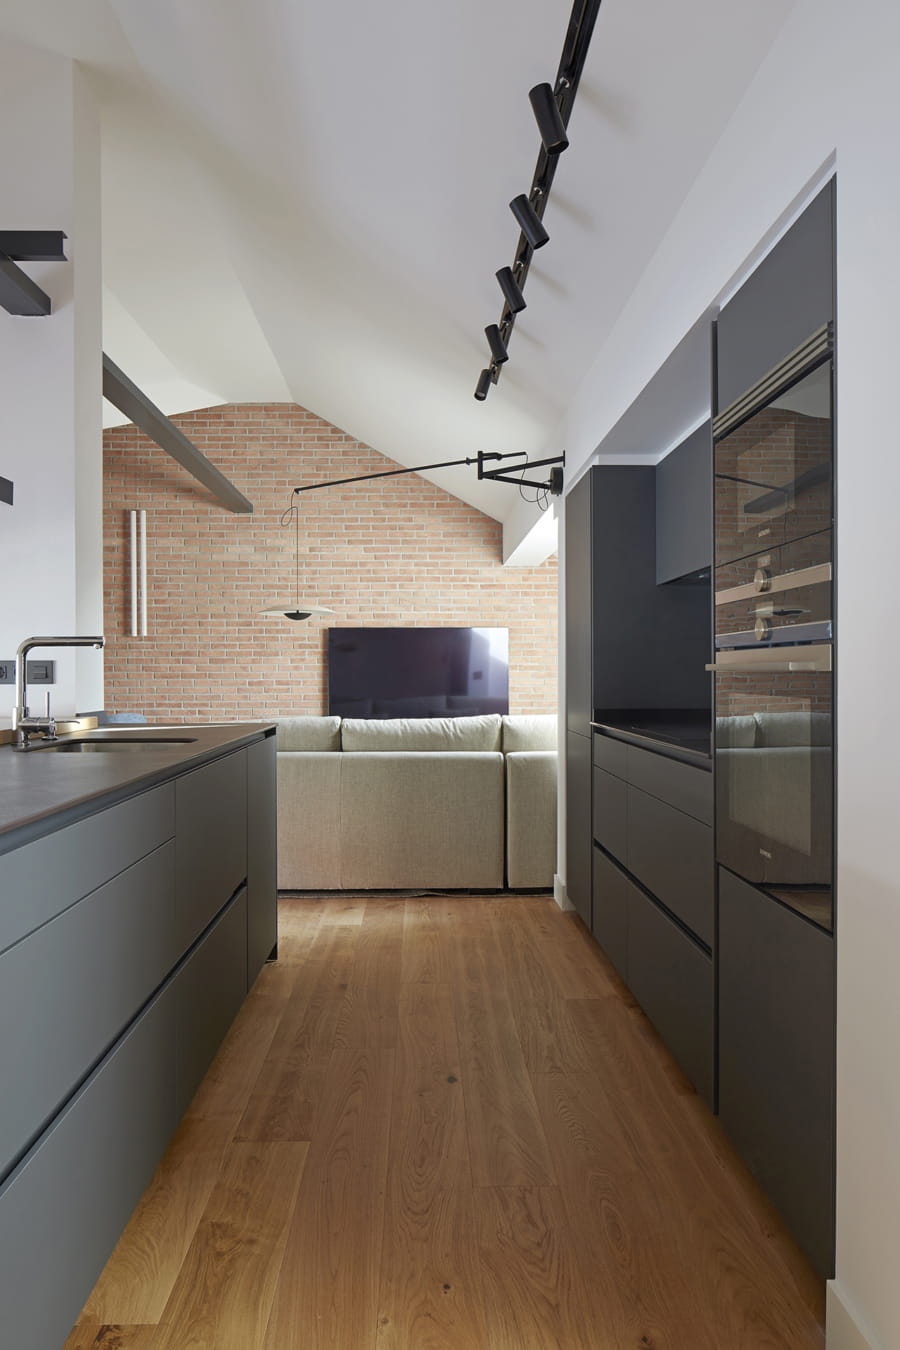 Open keuken naar zitkamer, ontworpen door architect Borja Vildosola